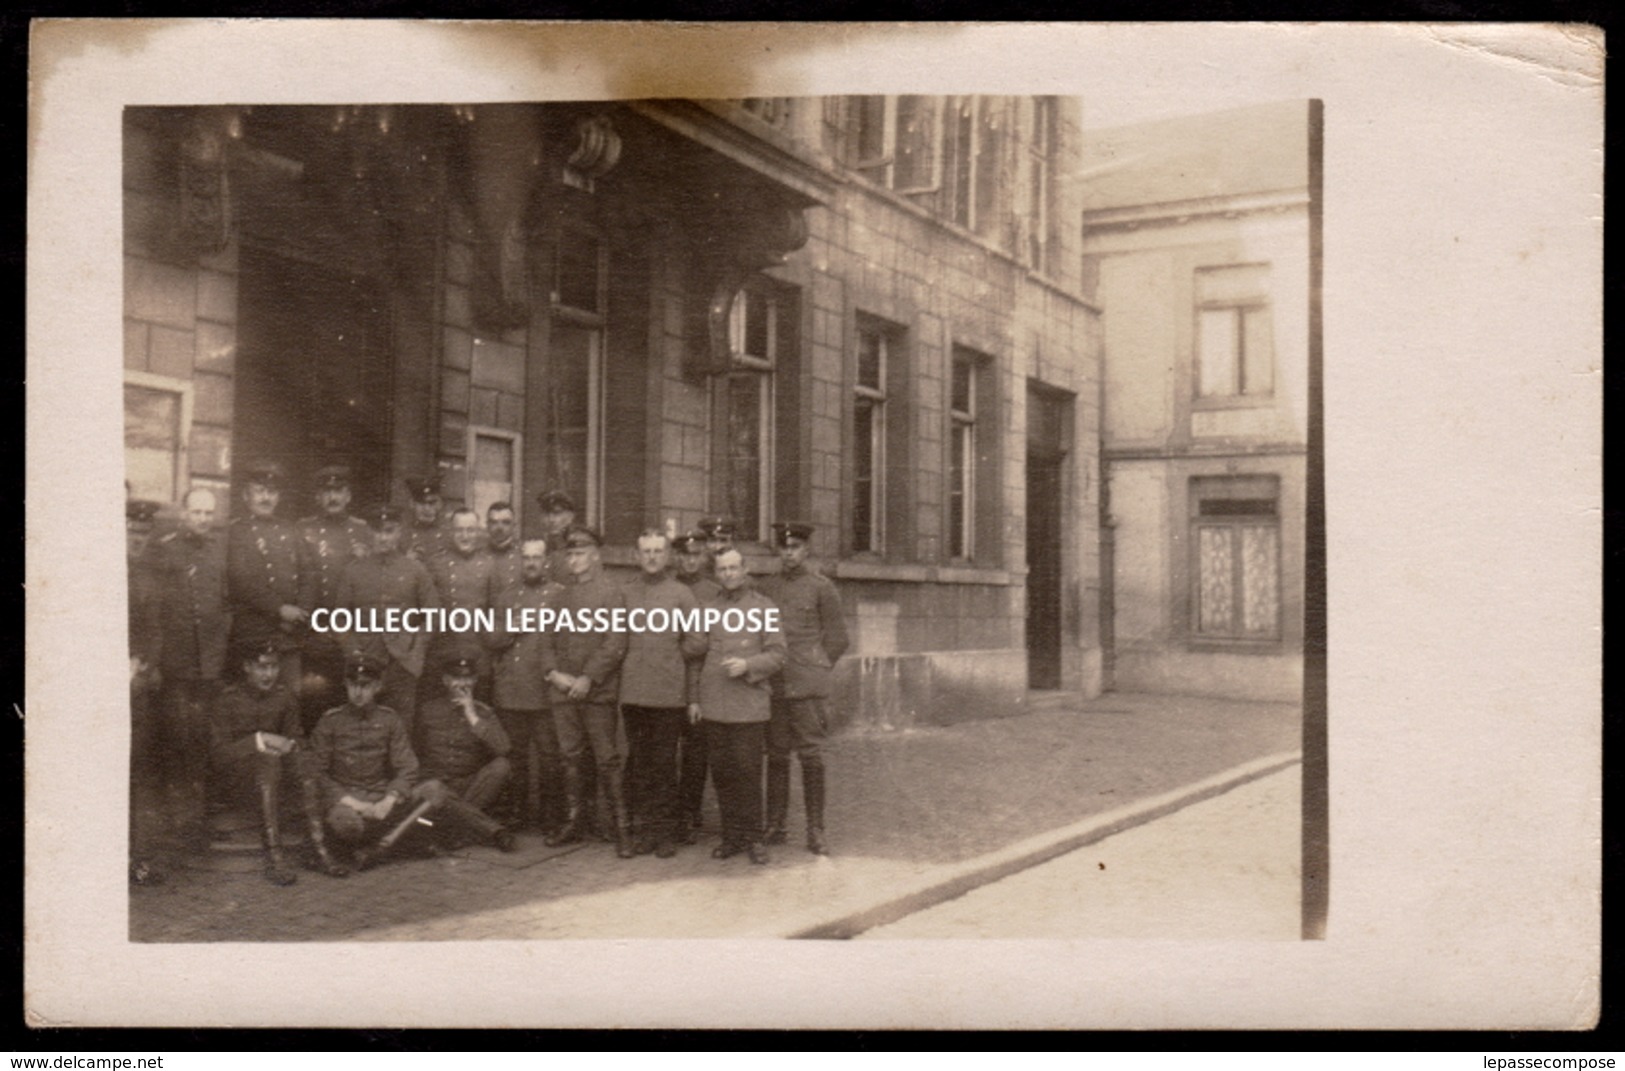 INEDIT QUIEVRAIN - HOTEL DE VILLE OCCUPE PAR L' ARMEE DU KAISER - OFFICIERS ALLEMANDS VERS 1914 - PLACE DU MARCHE - Quiévrain